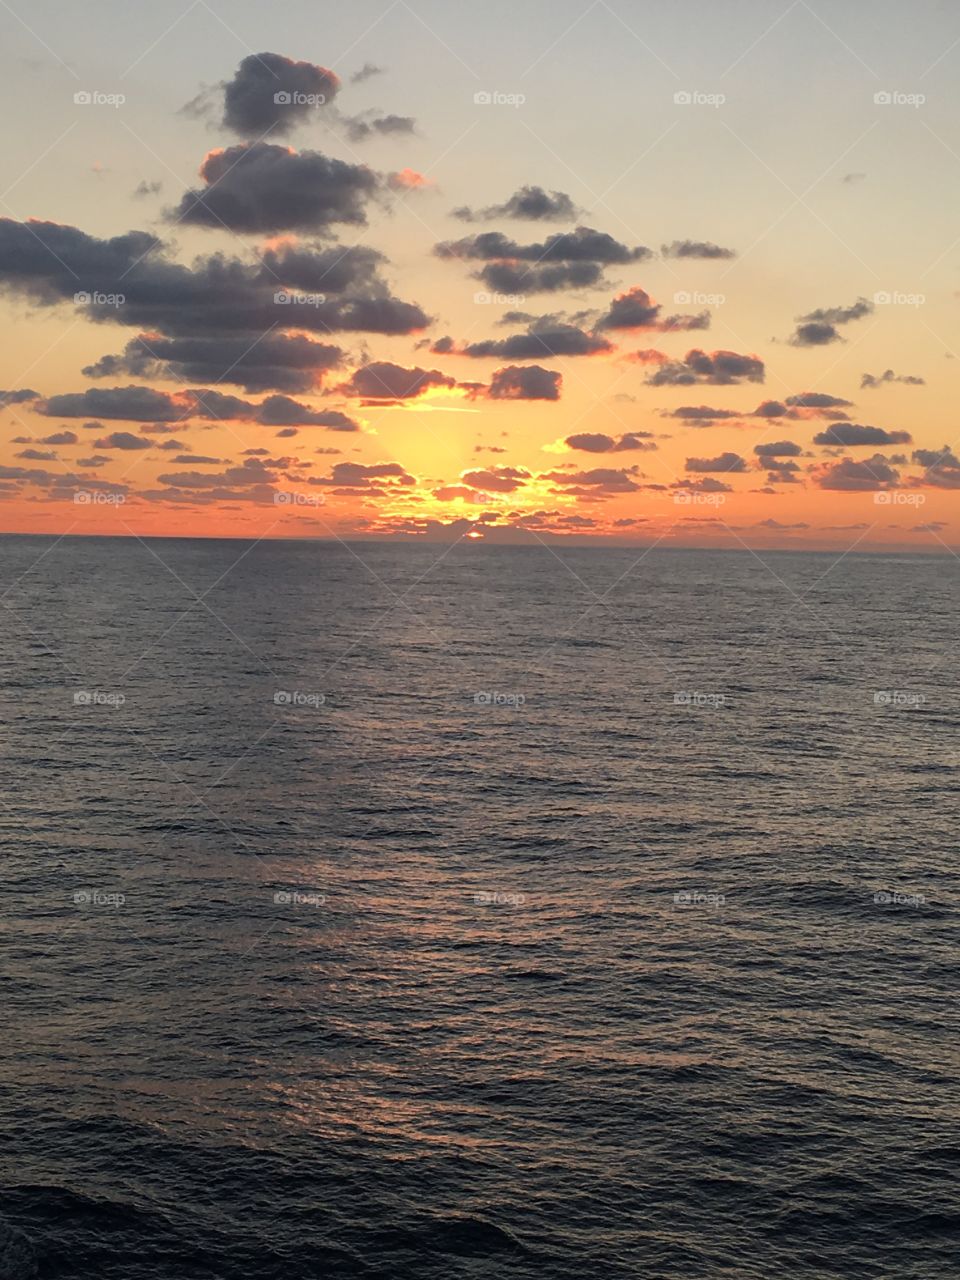 Sunset on the open ocean